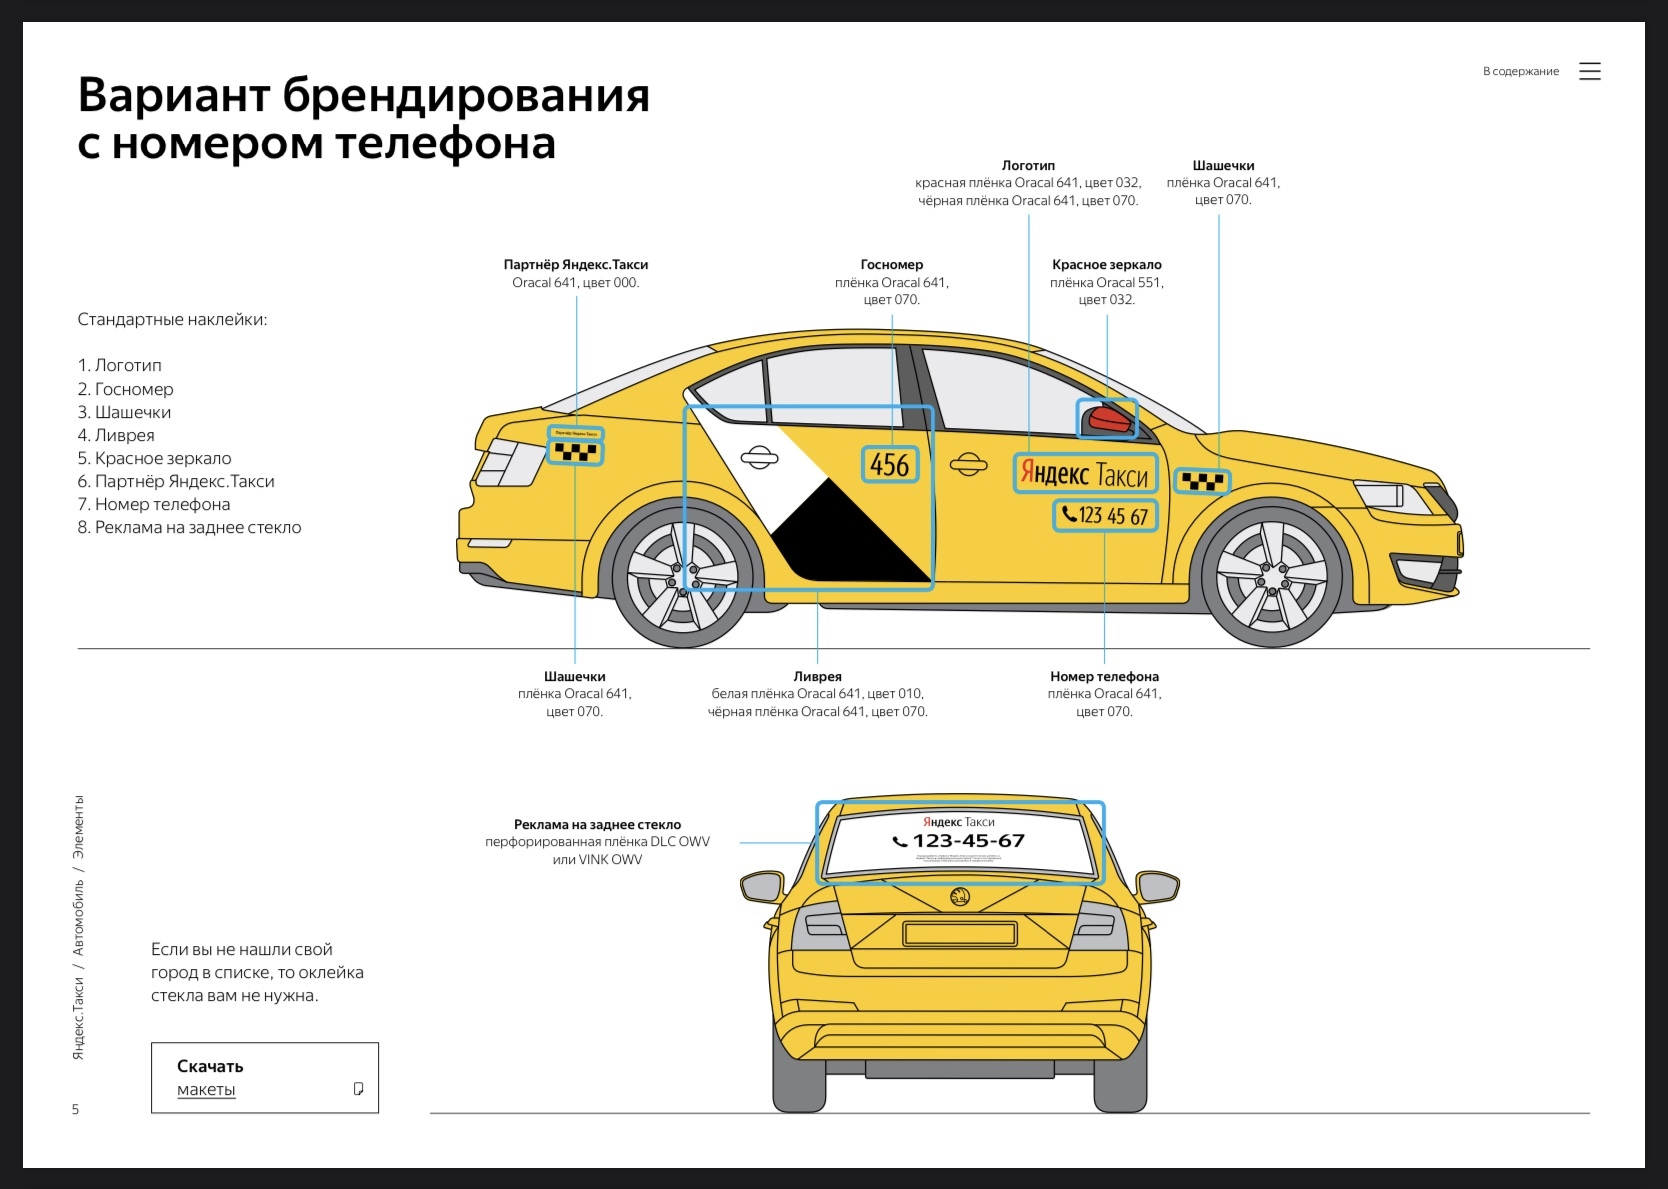 Наклейки Яндекс такси для брендирования